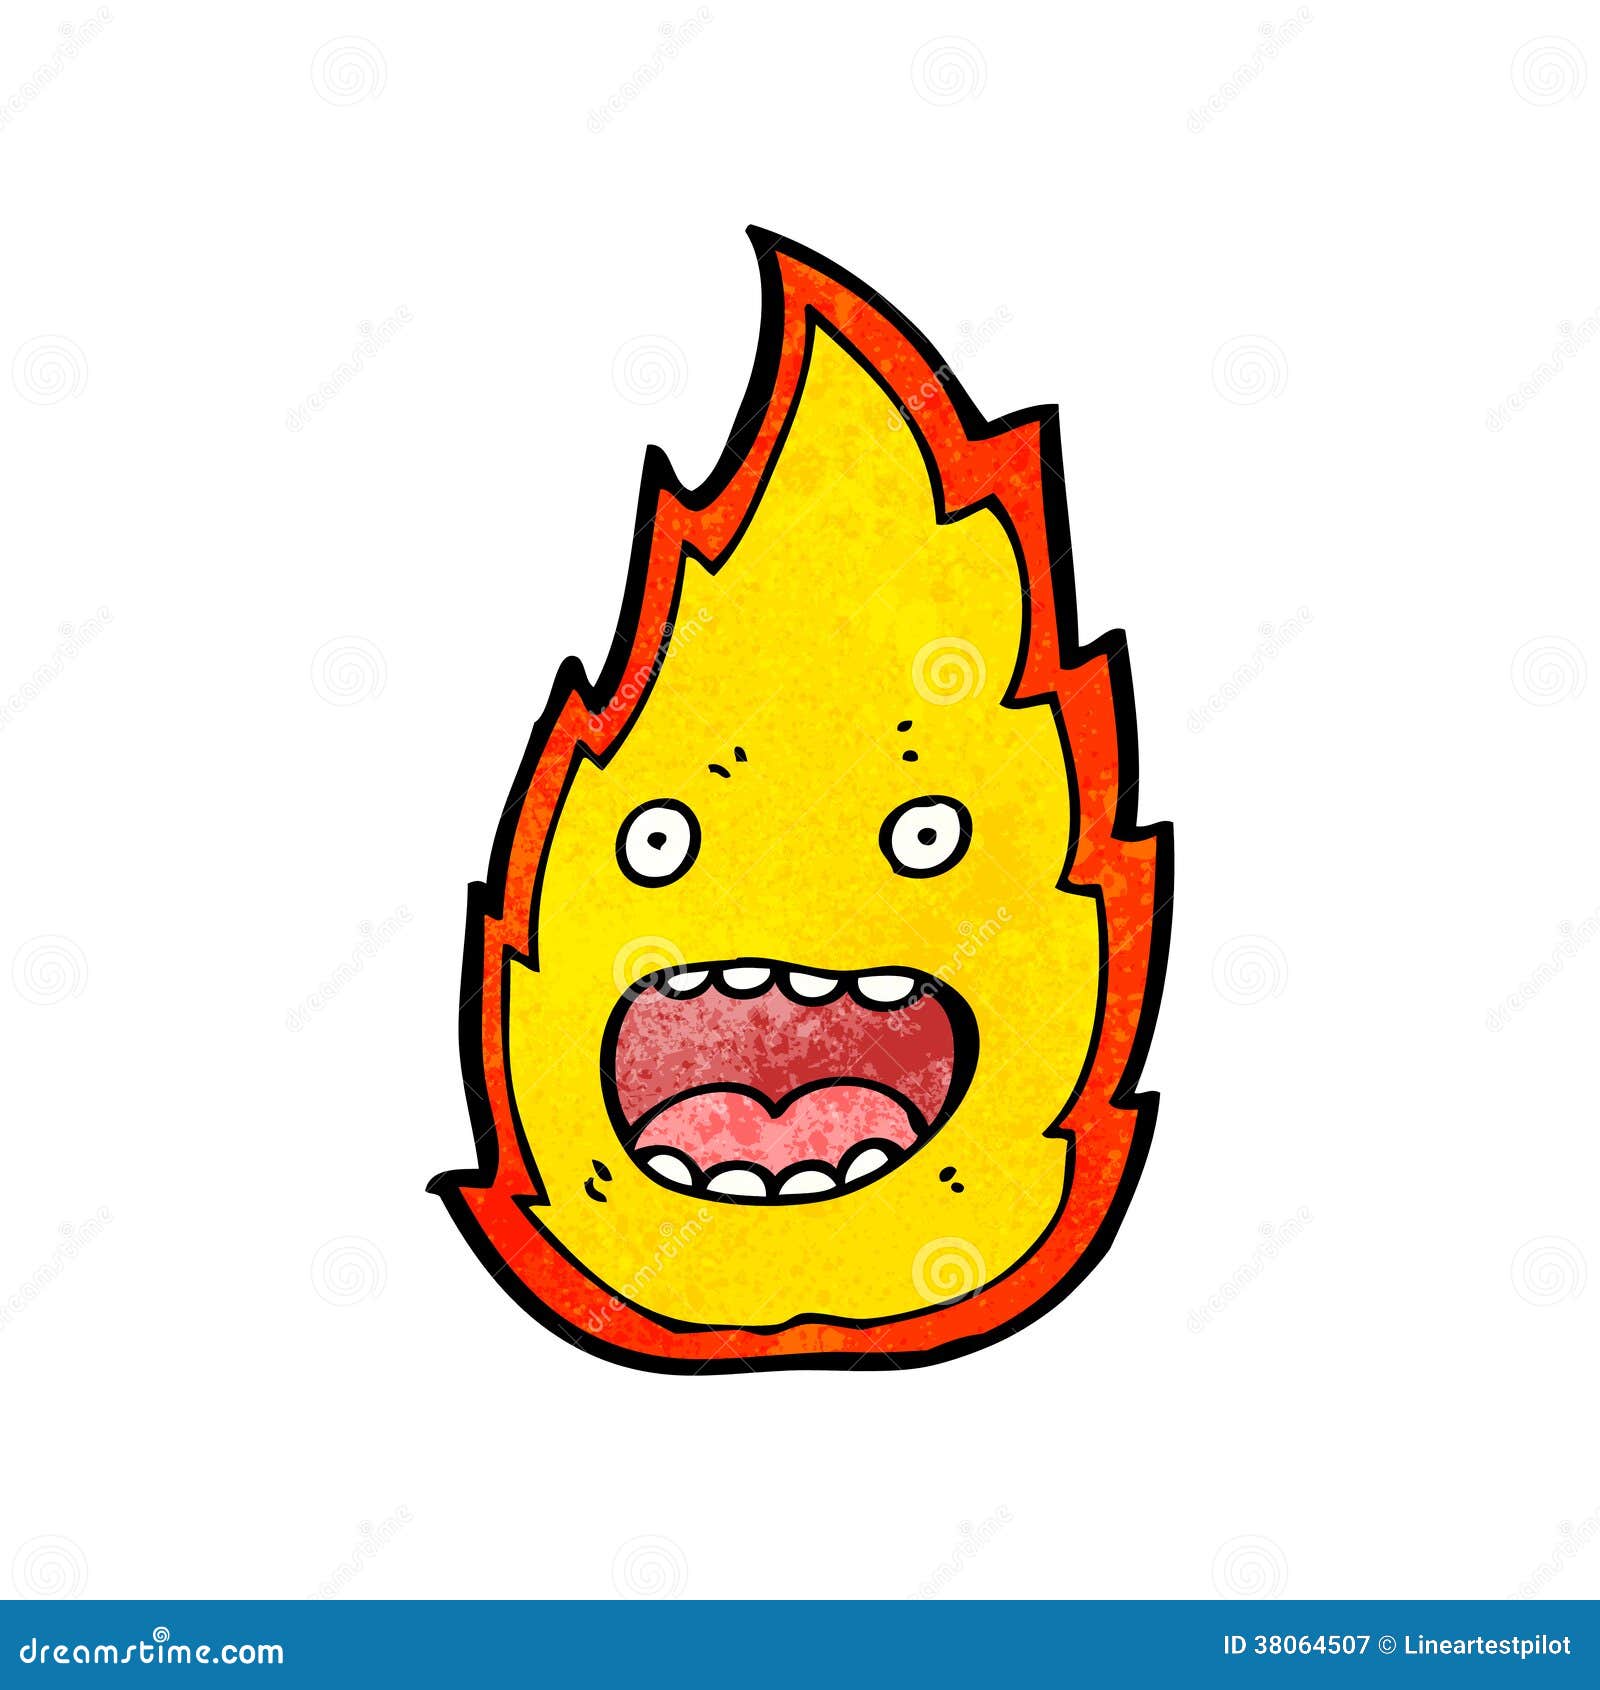 Cartoon fire stock vector. Illustration of funny, spirit - 38064507